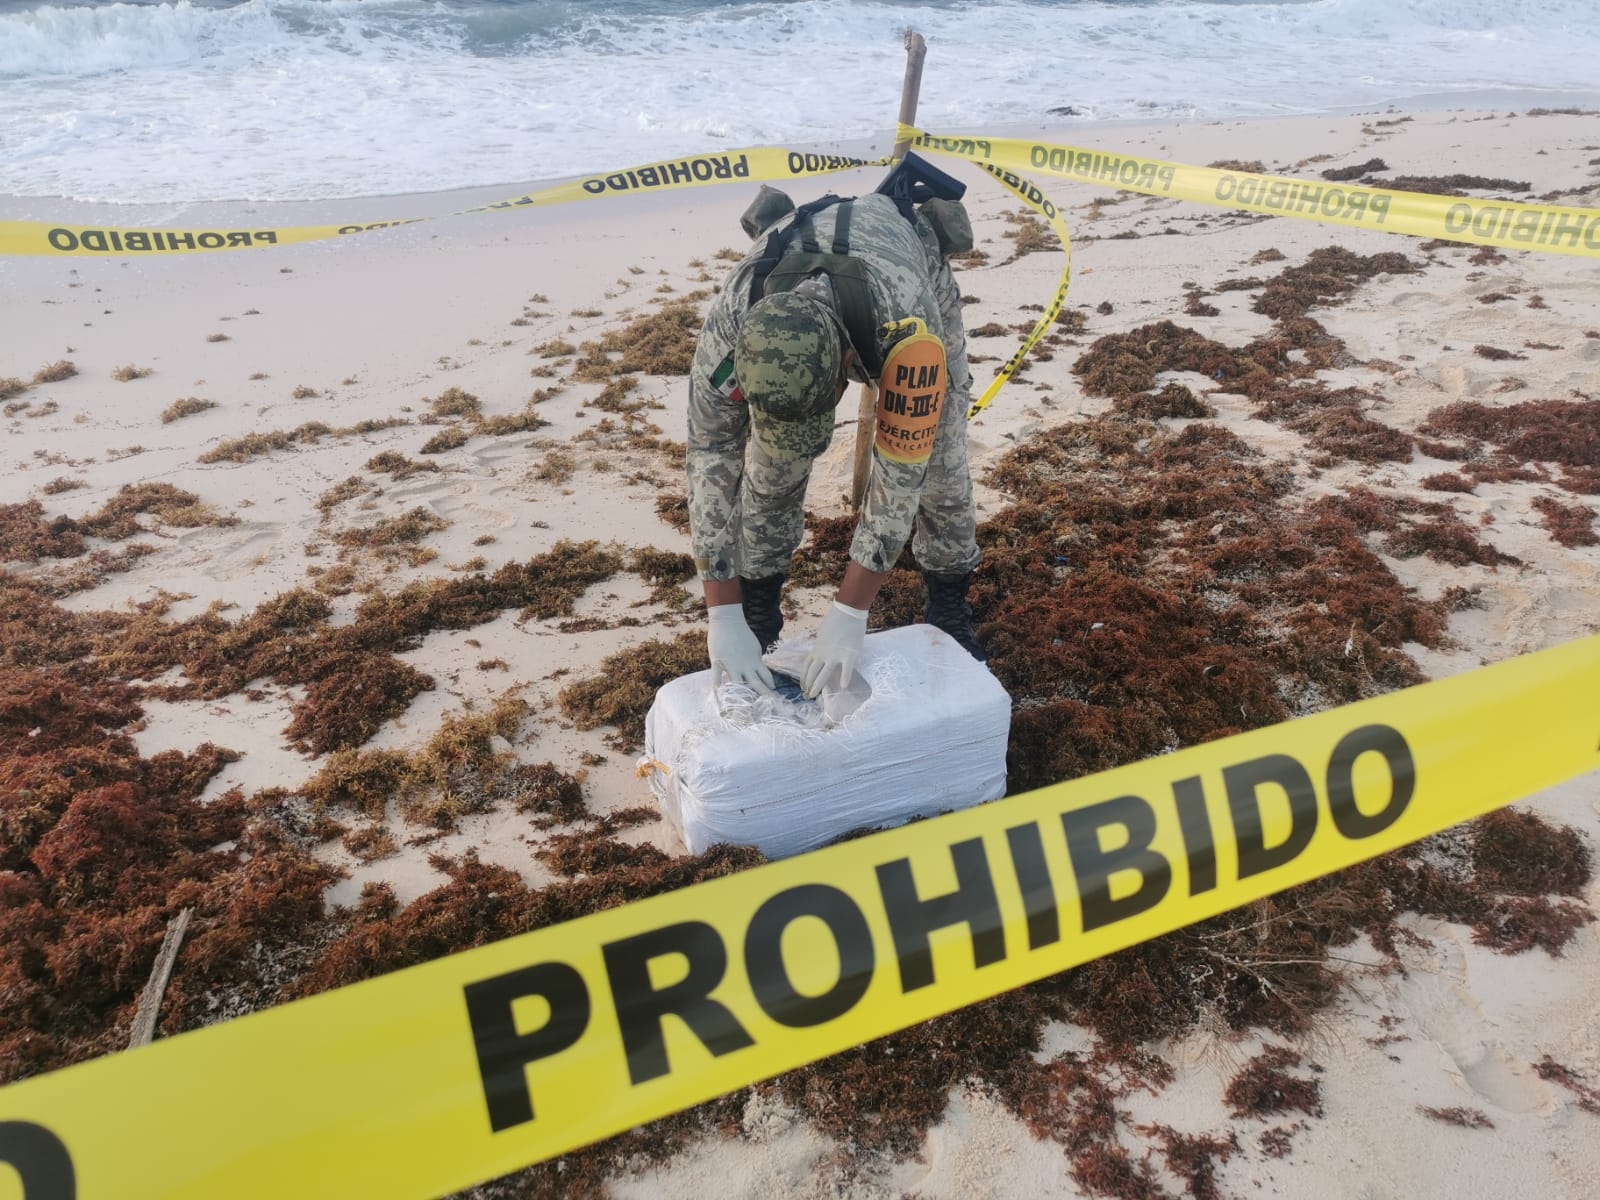 Recalan 30 paquetes de cocaína en playas de la costa este de Cozumel